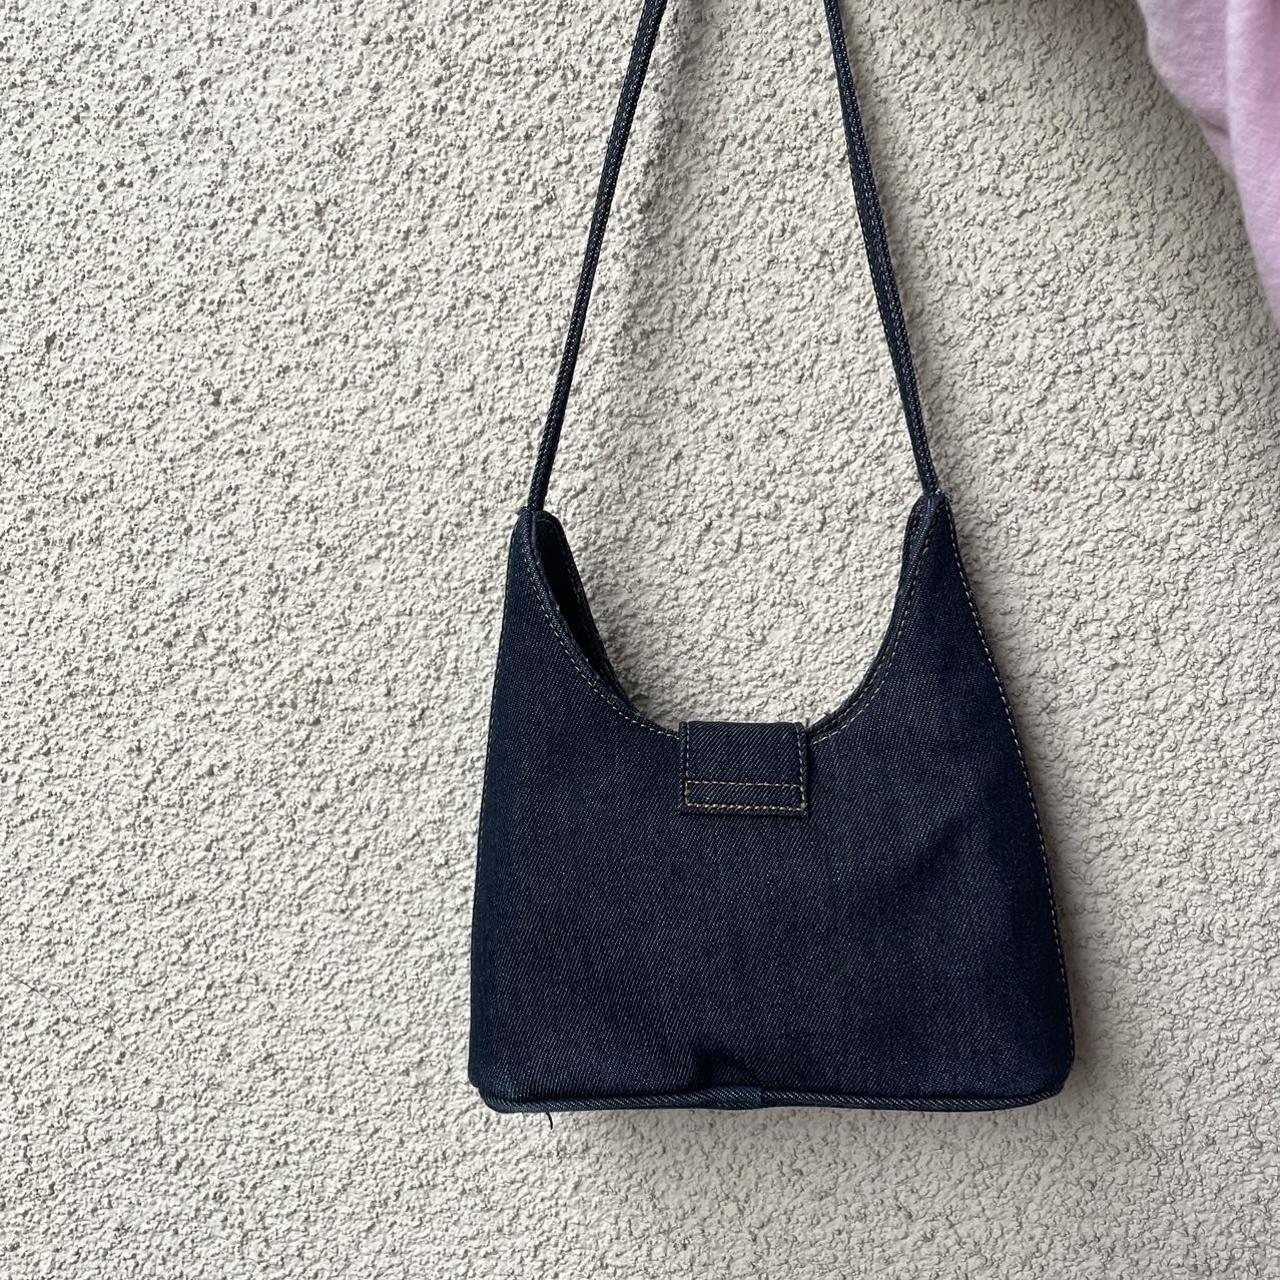 Forever 21 shiny black shoulder bag 🐈‍⬛ Super cute, - Depop